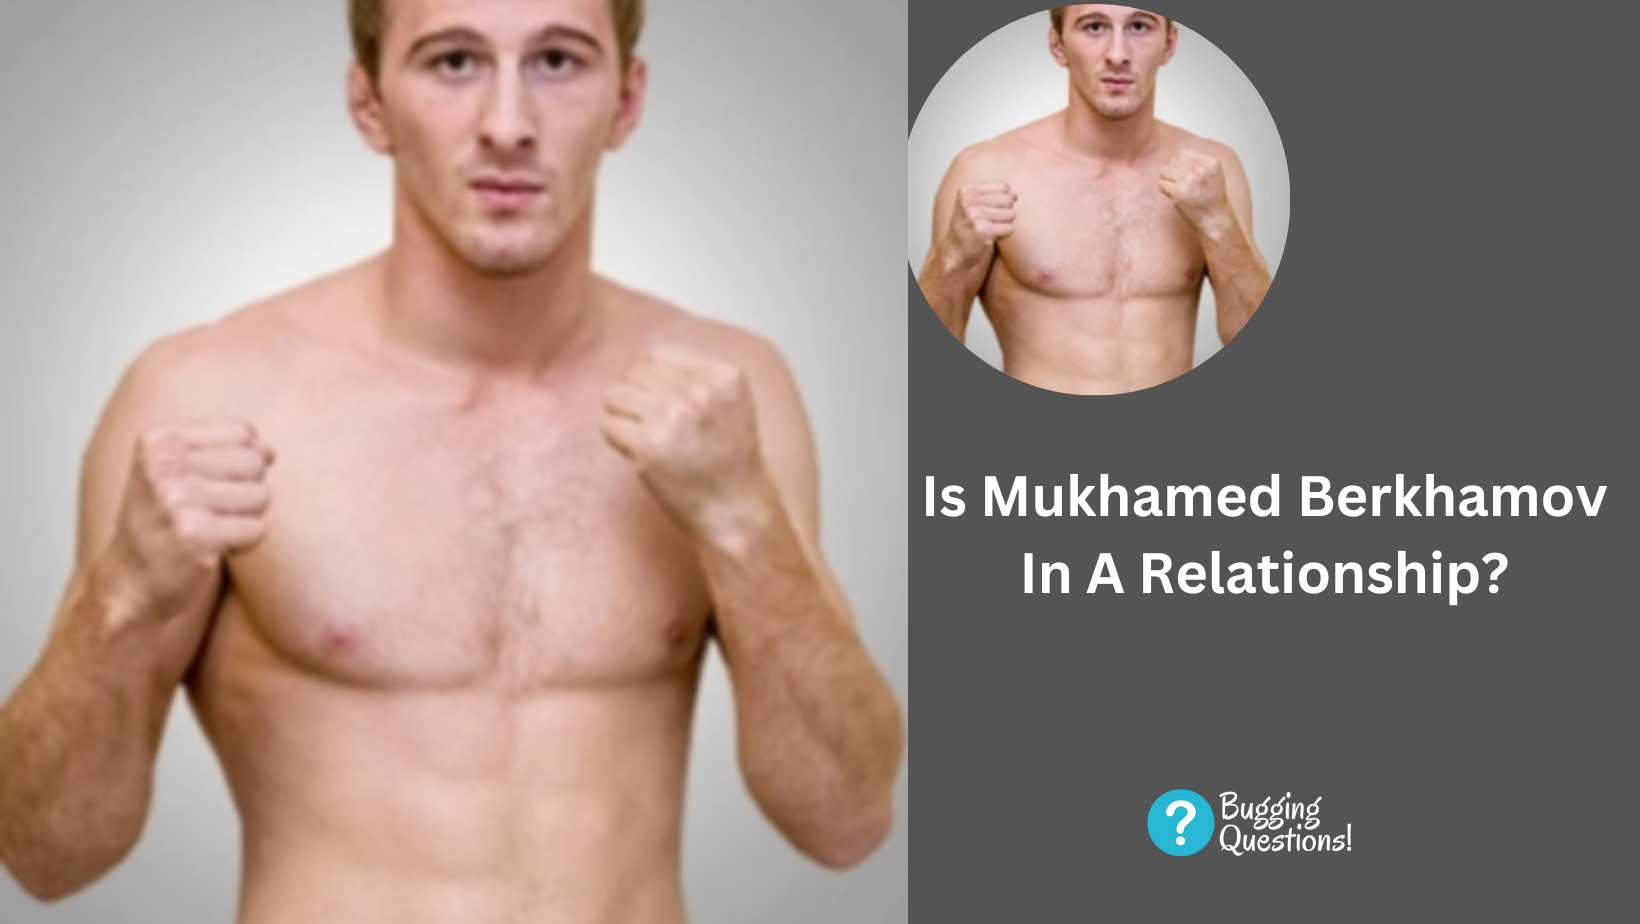 Is Mukhamed Berkhamov In A Relationship?